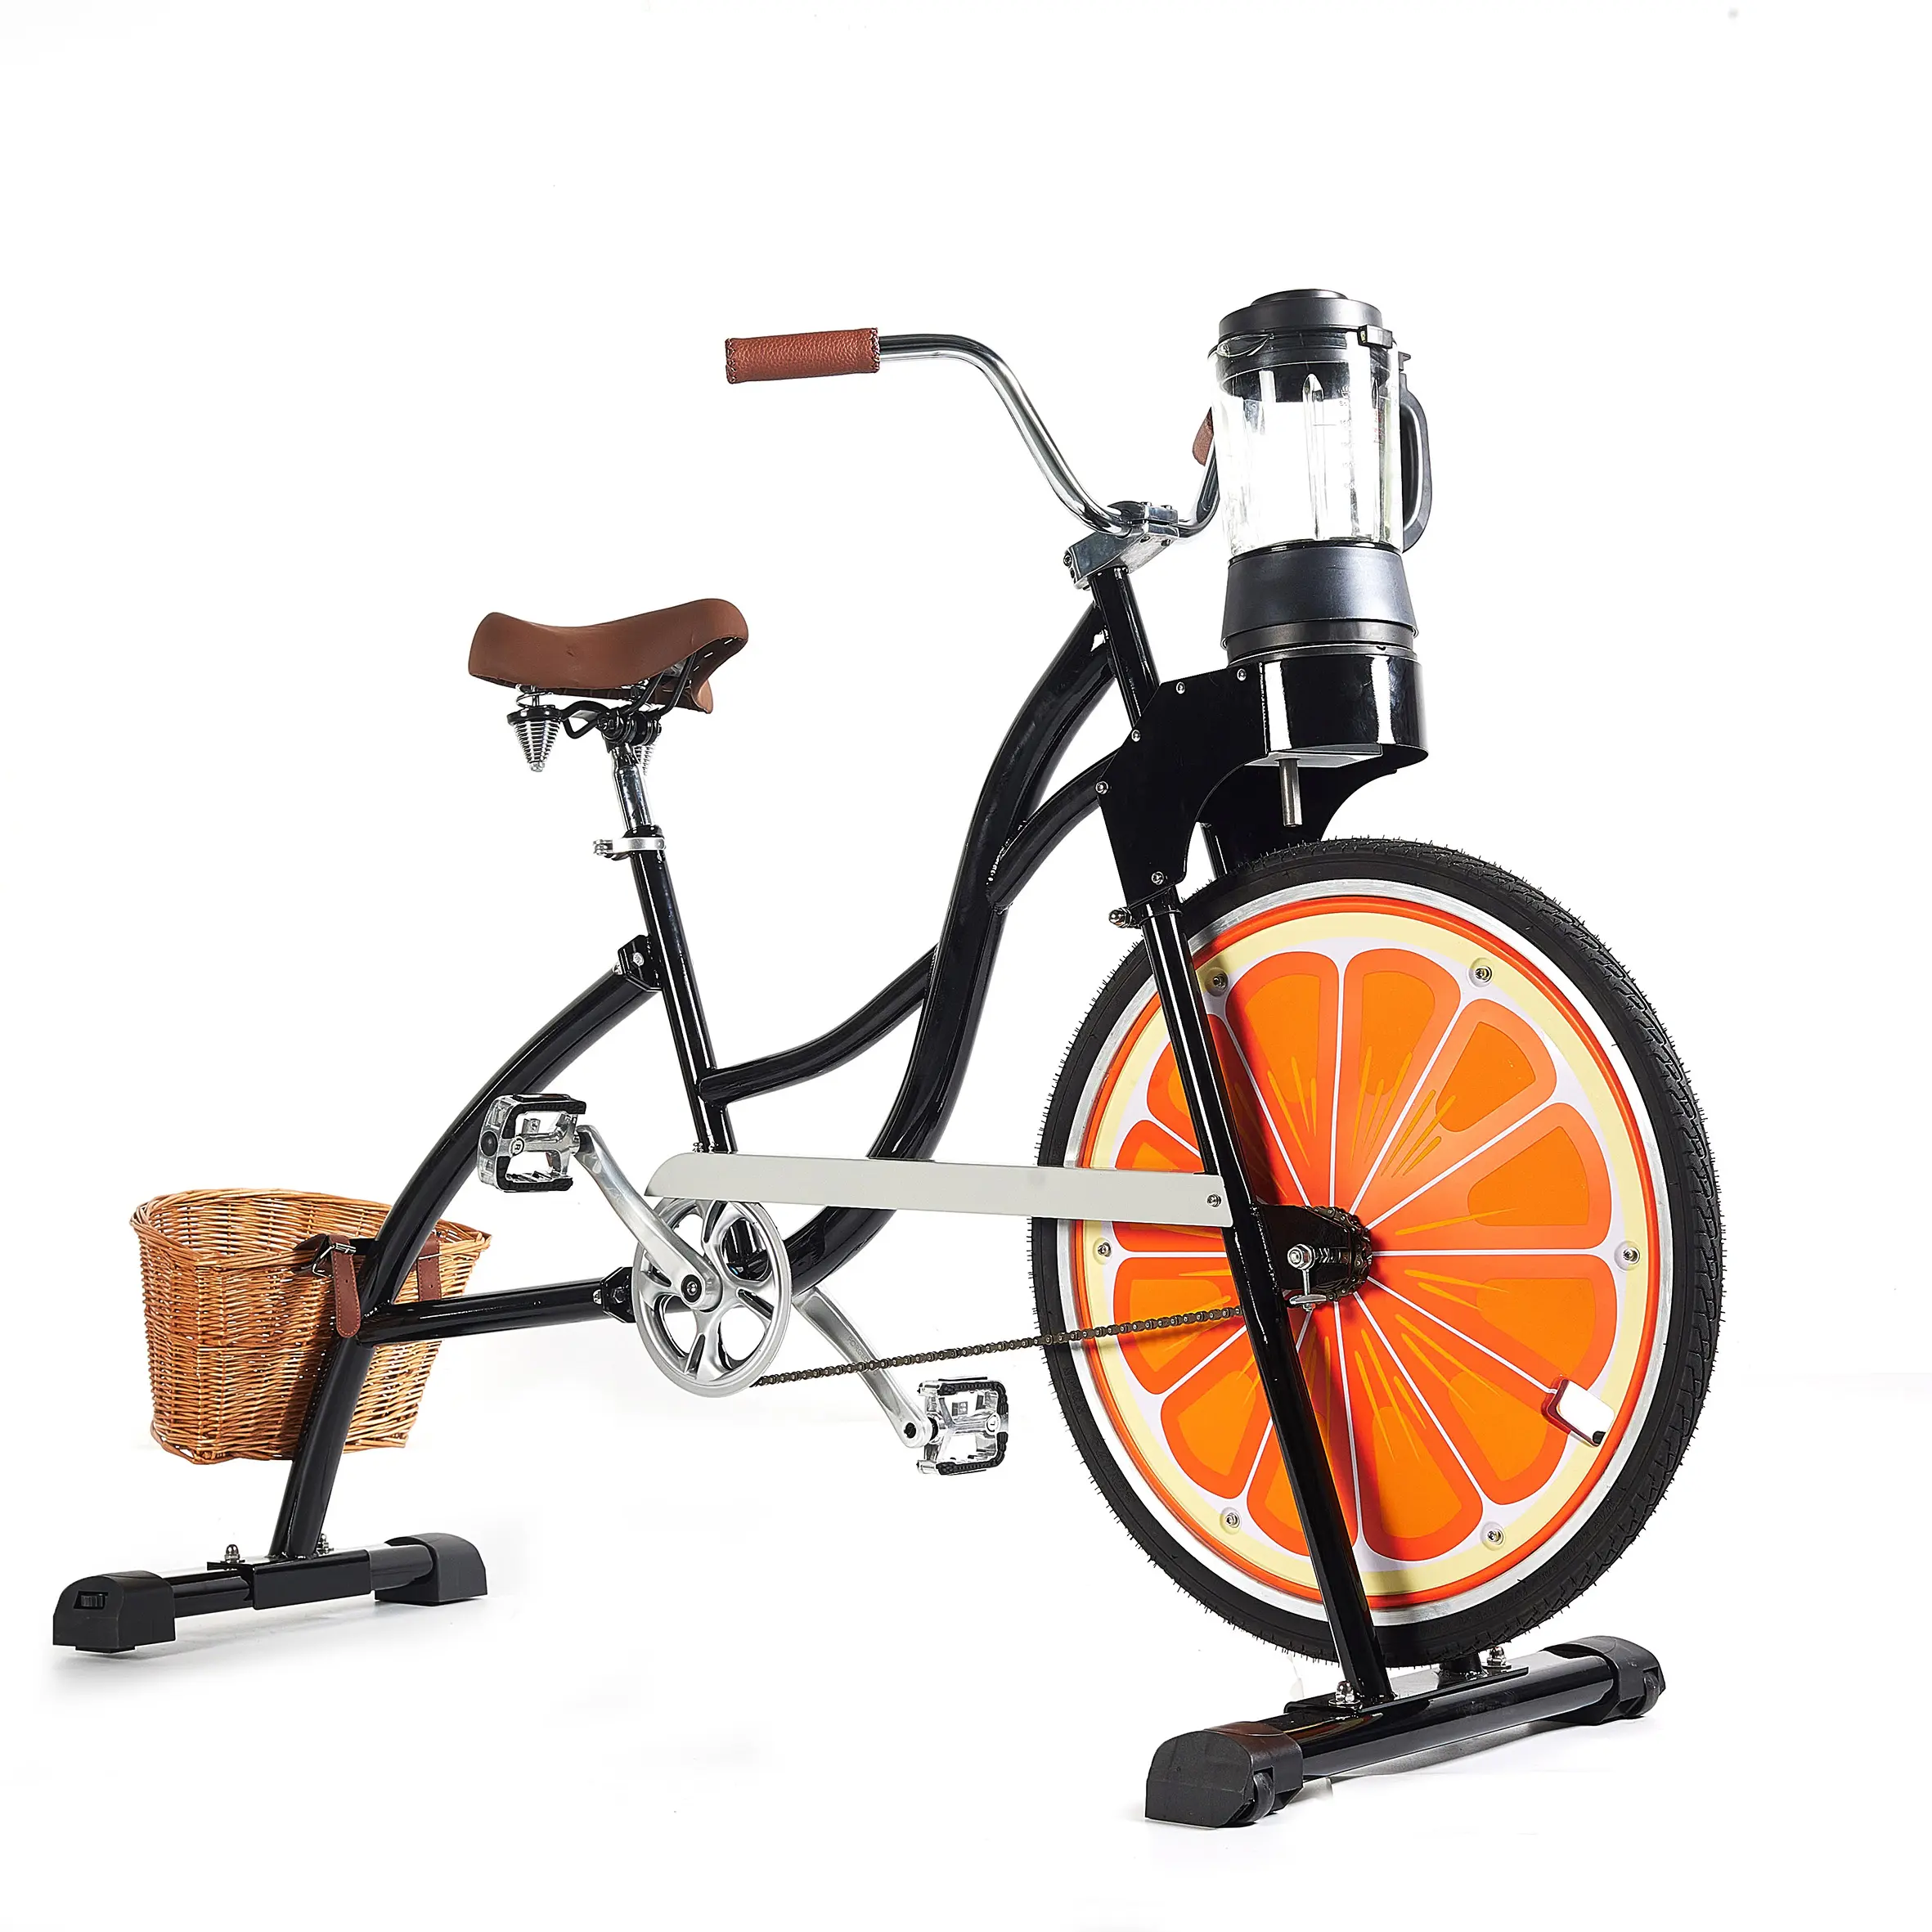 EXI自転車機固定ギア広告ブラックコールドプレスサイトシーイングパルパー野菜フルーツペダルバイク